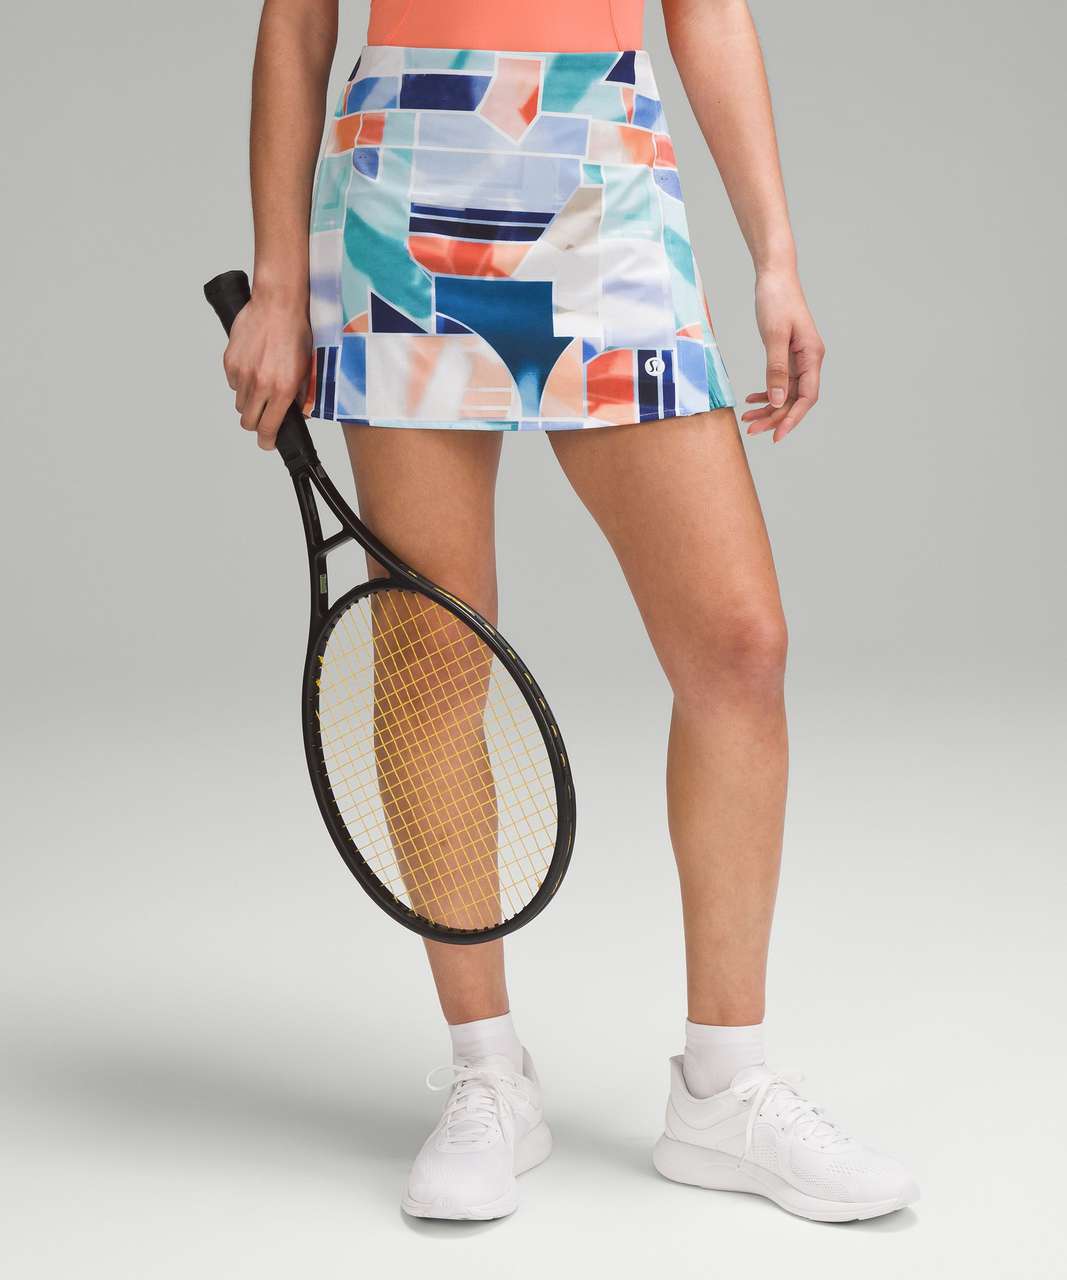 Lululemon Peek Pleat High-Rise Tennis Skirt - Shadow Court Multi / Night Sea